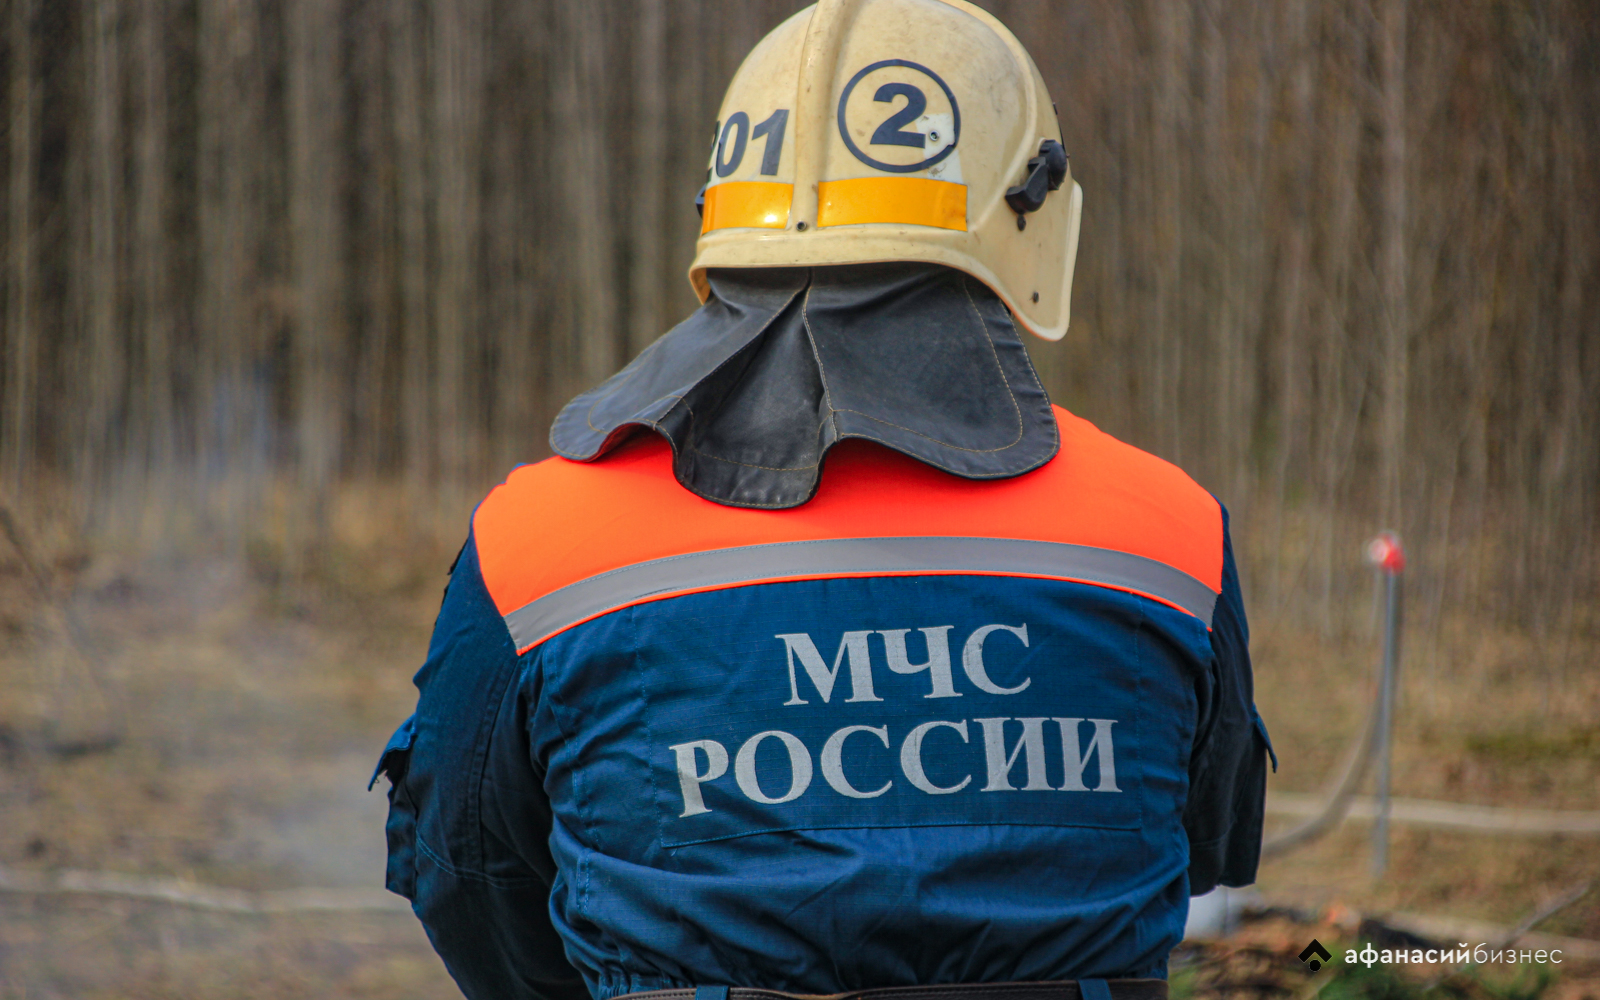 В каких случаях будет вводиться режим чрезвычайной ситуации, определили в МЧС России - новости Афанасий